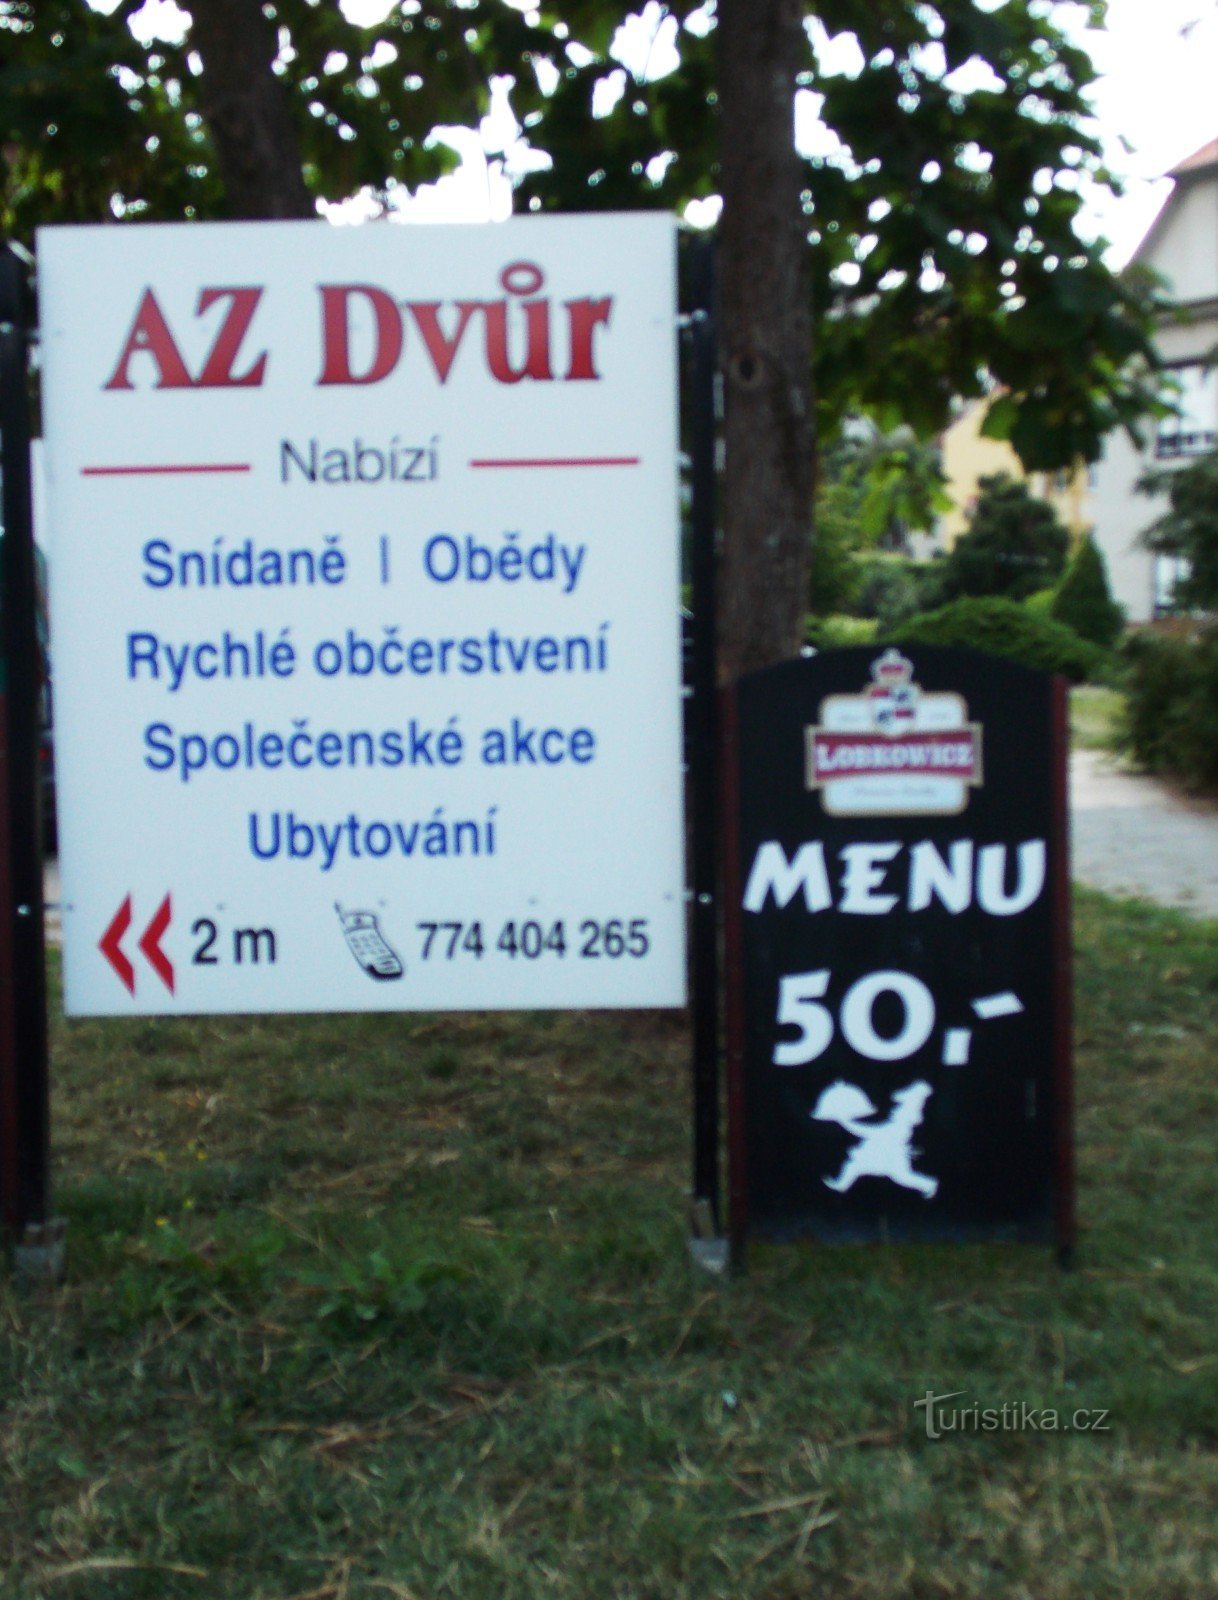 ルハチョヴィツェのレストラン AZ dvůr